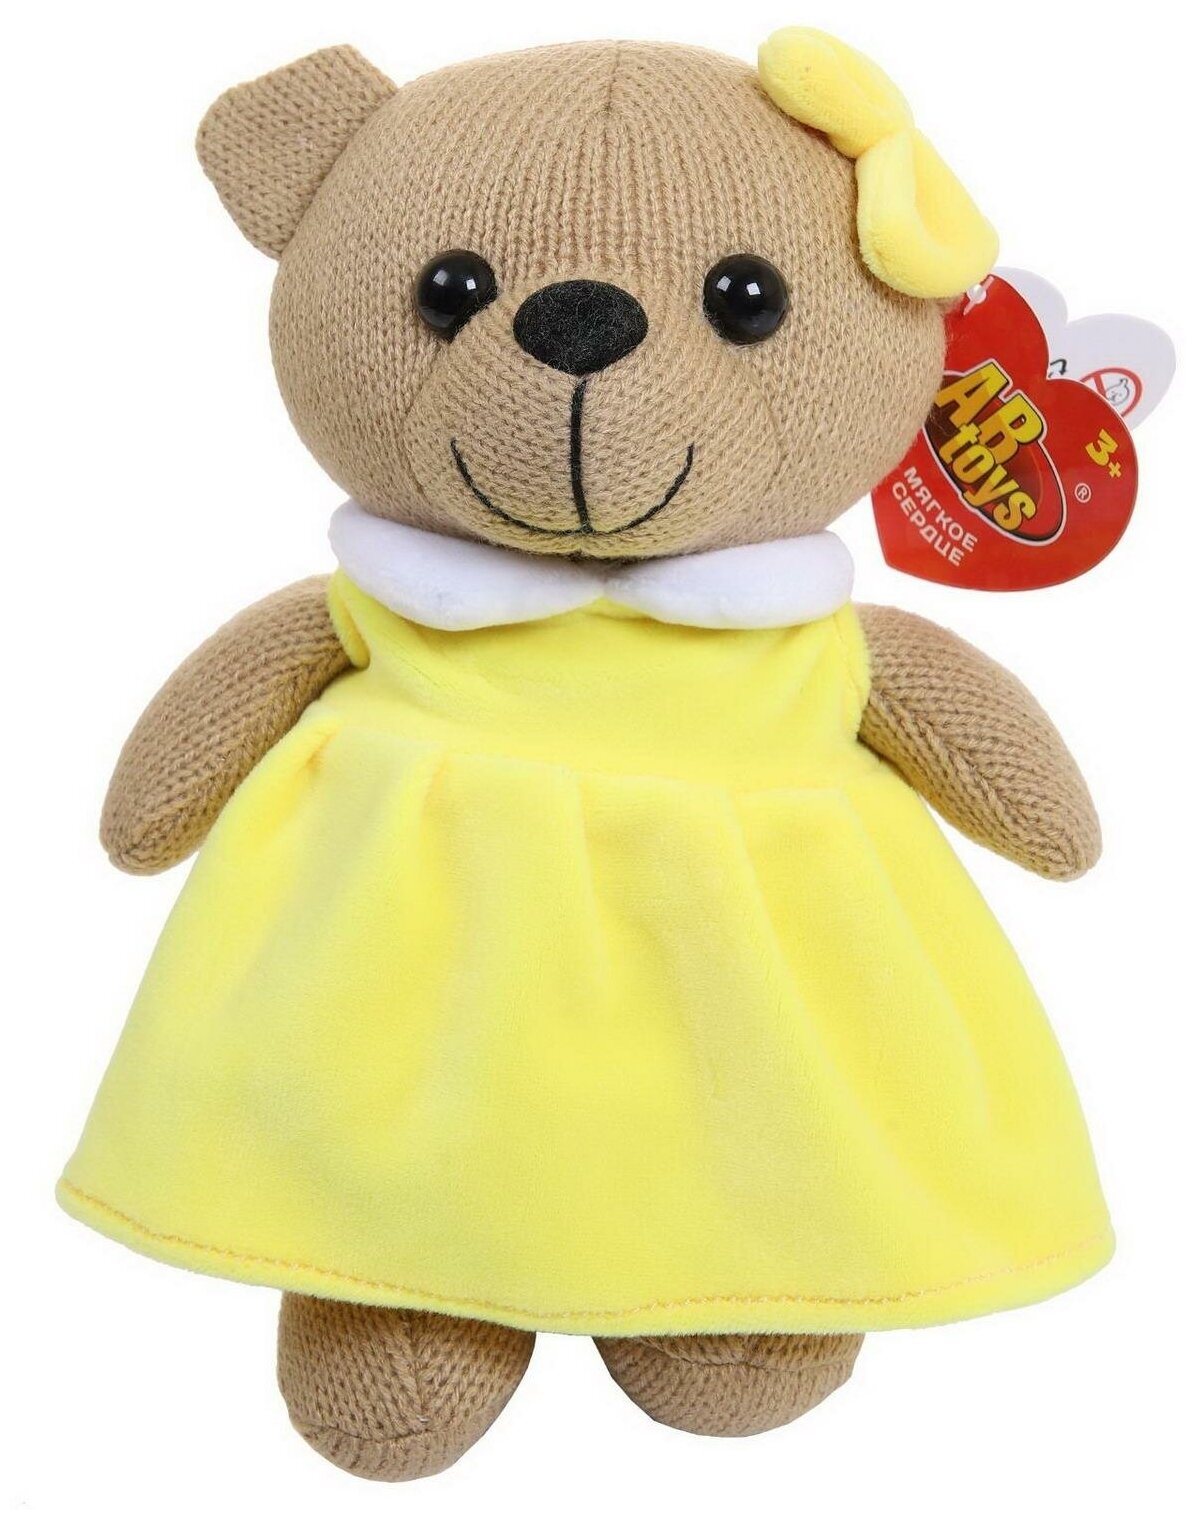 Мягкая игрушка Abtoys Knitted. Мишка девочка вязаная, 25см в желтом платьице M4913